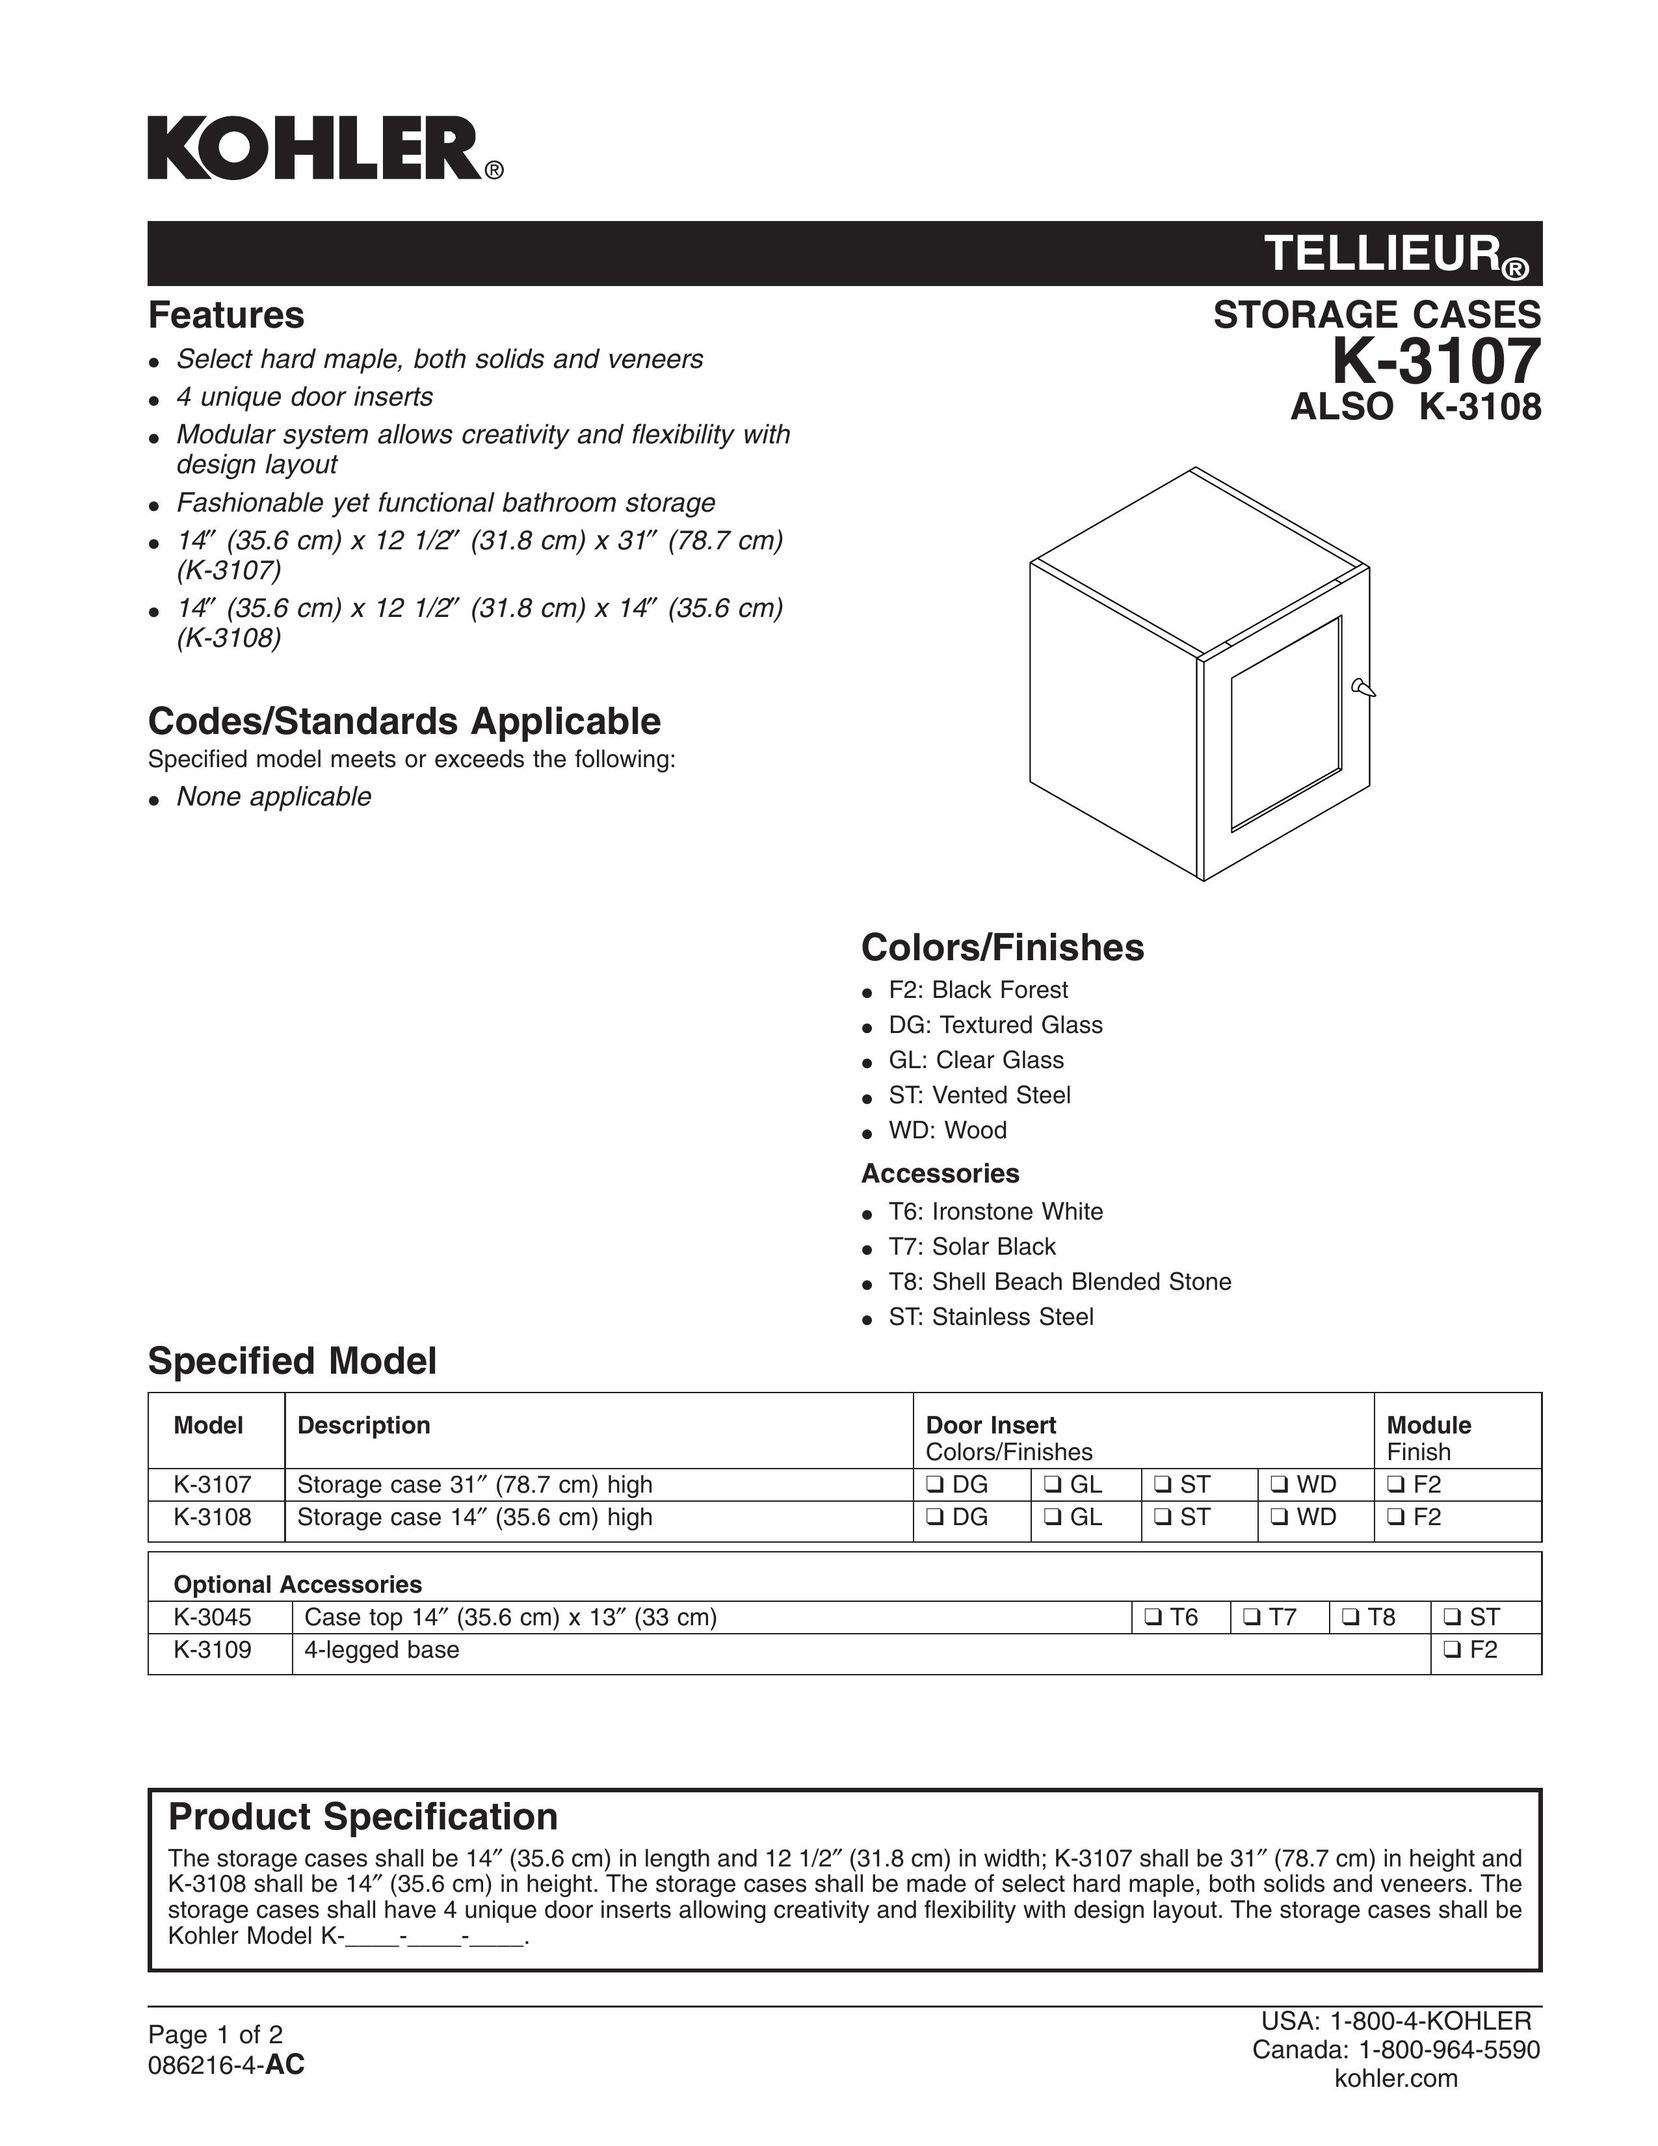 Kohler K-3108 Tool Storage User Manual